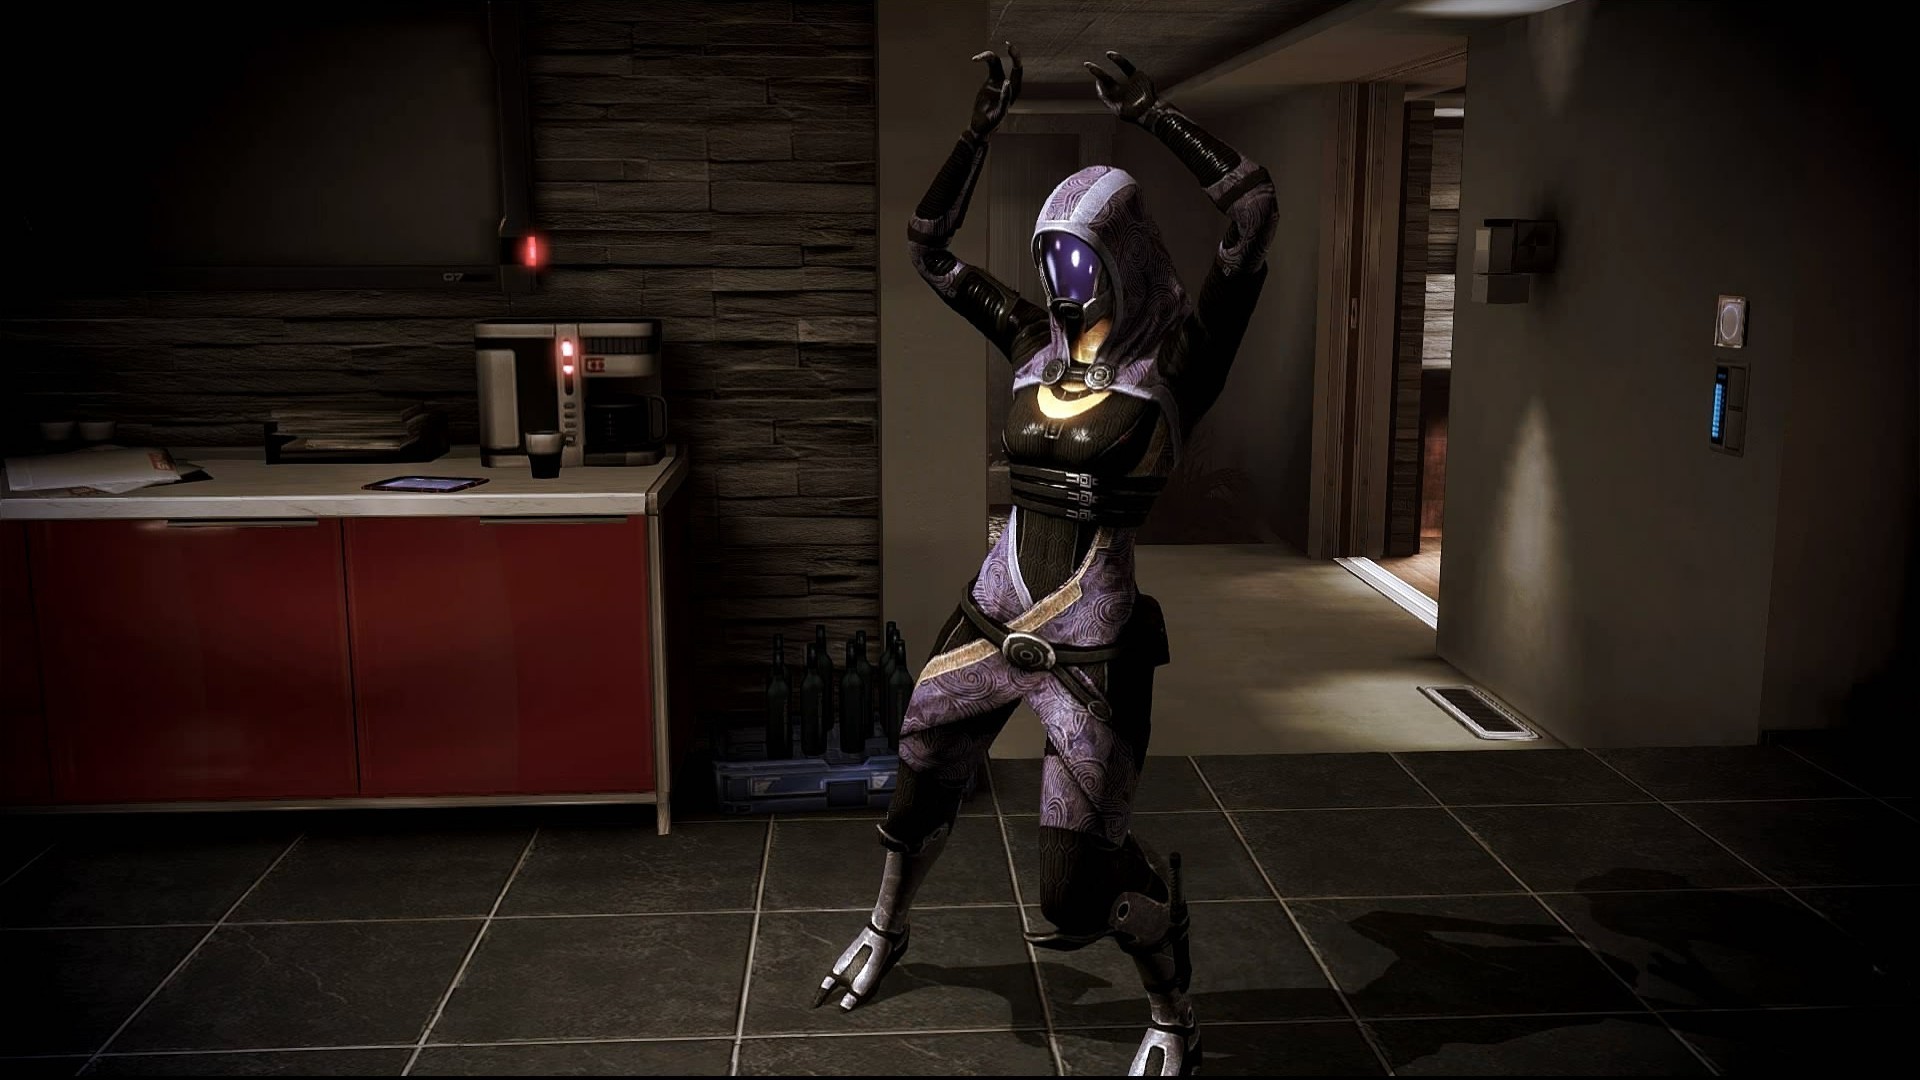 1920x1080  wallpaper Mass Effect ÃÂ· Mass Effect 3 ÃÂ· dancing ÃÂ· Dreamscene Ã